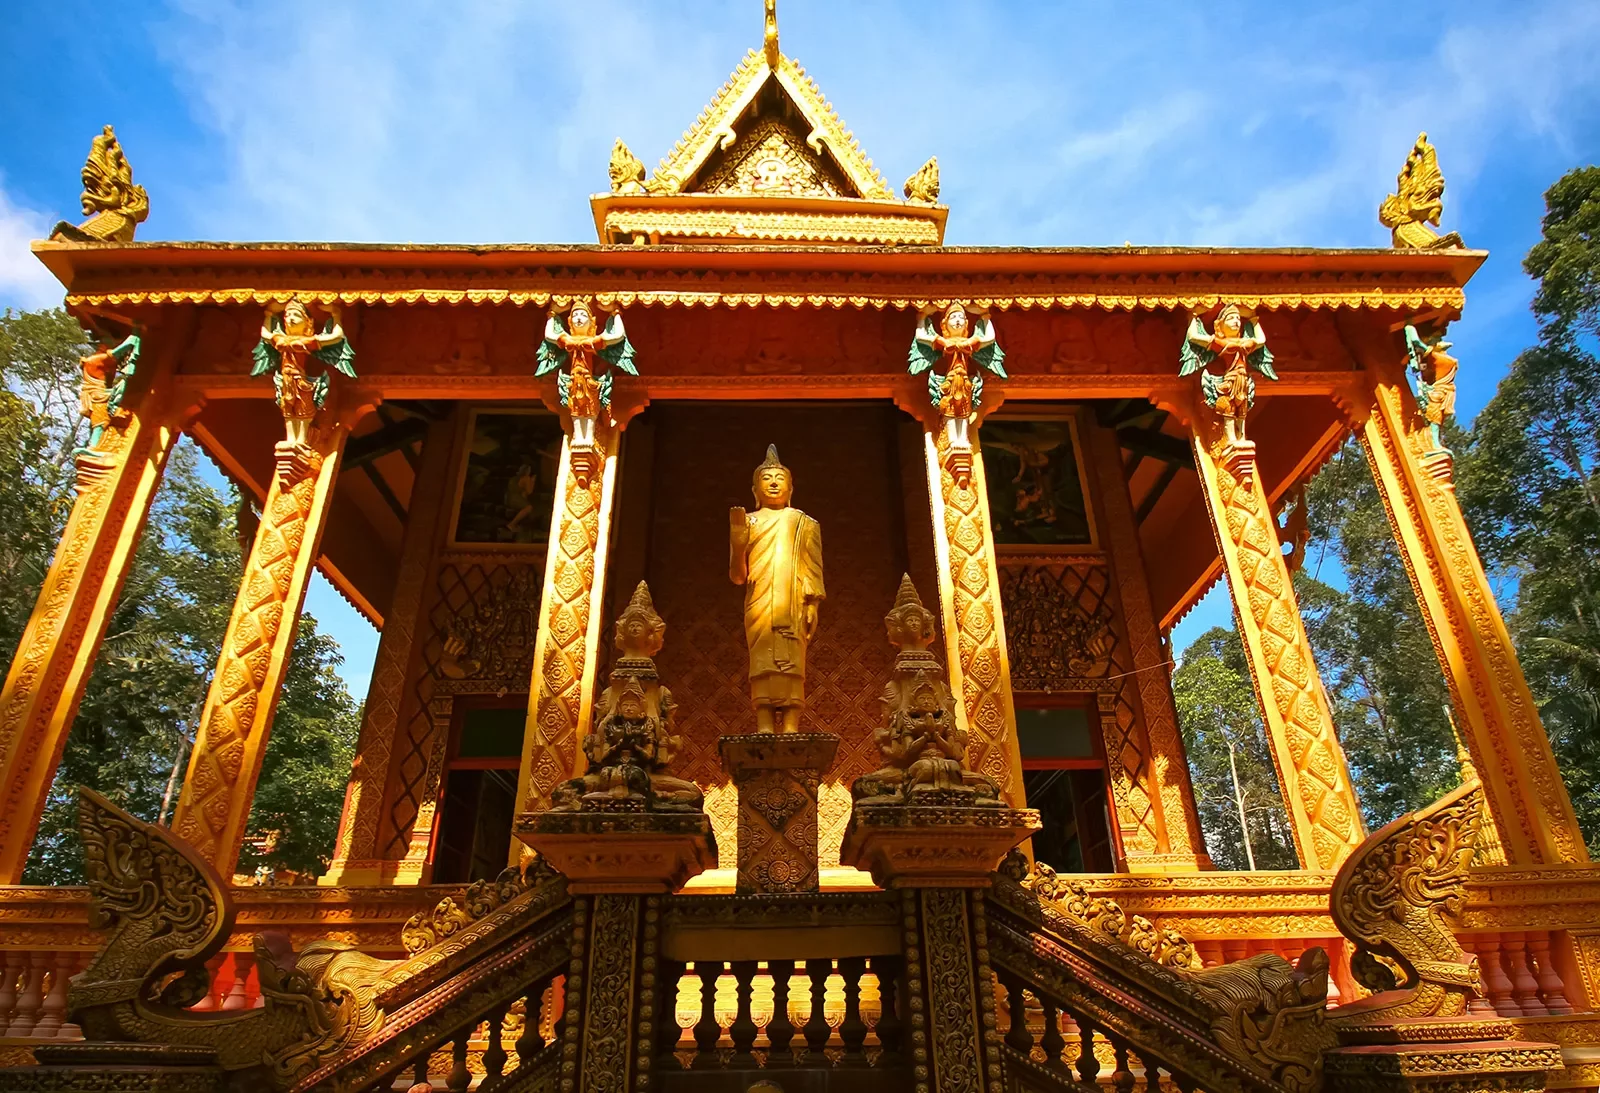 Temple in Vietnam